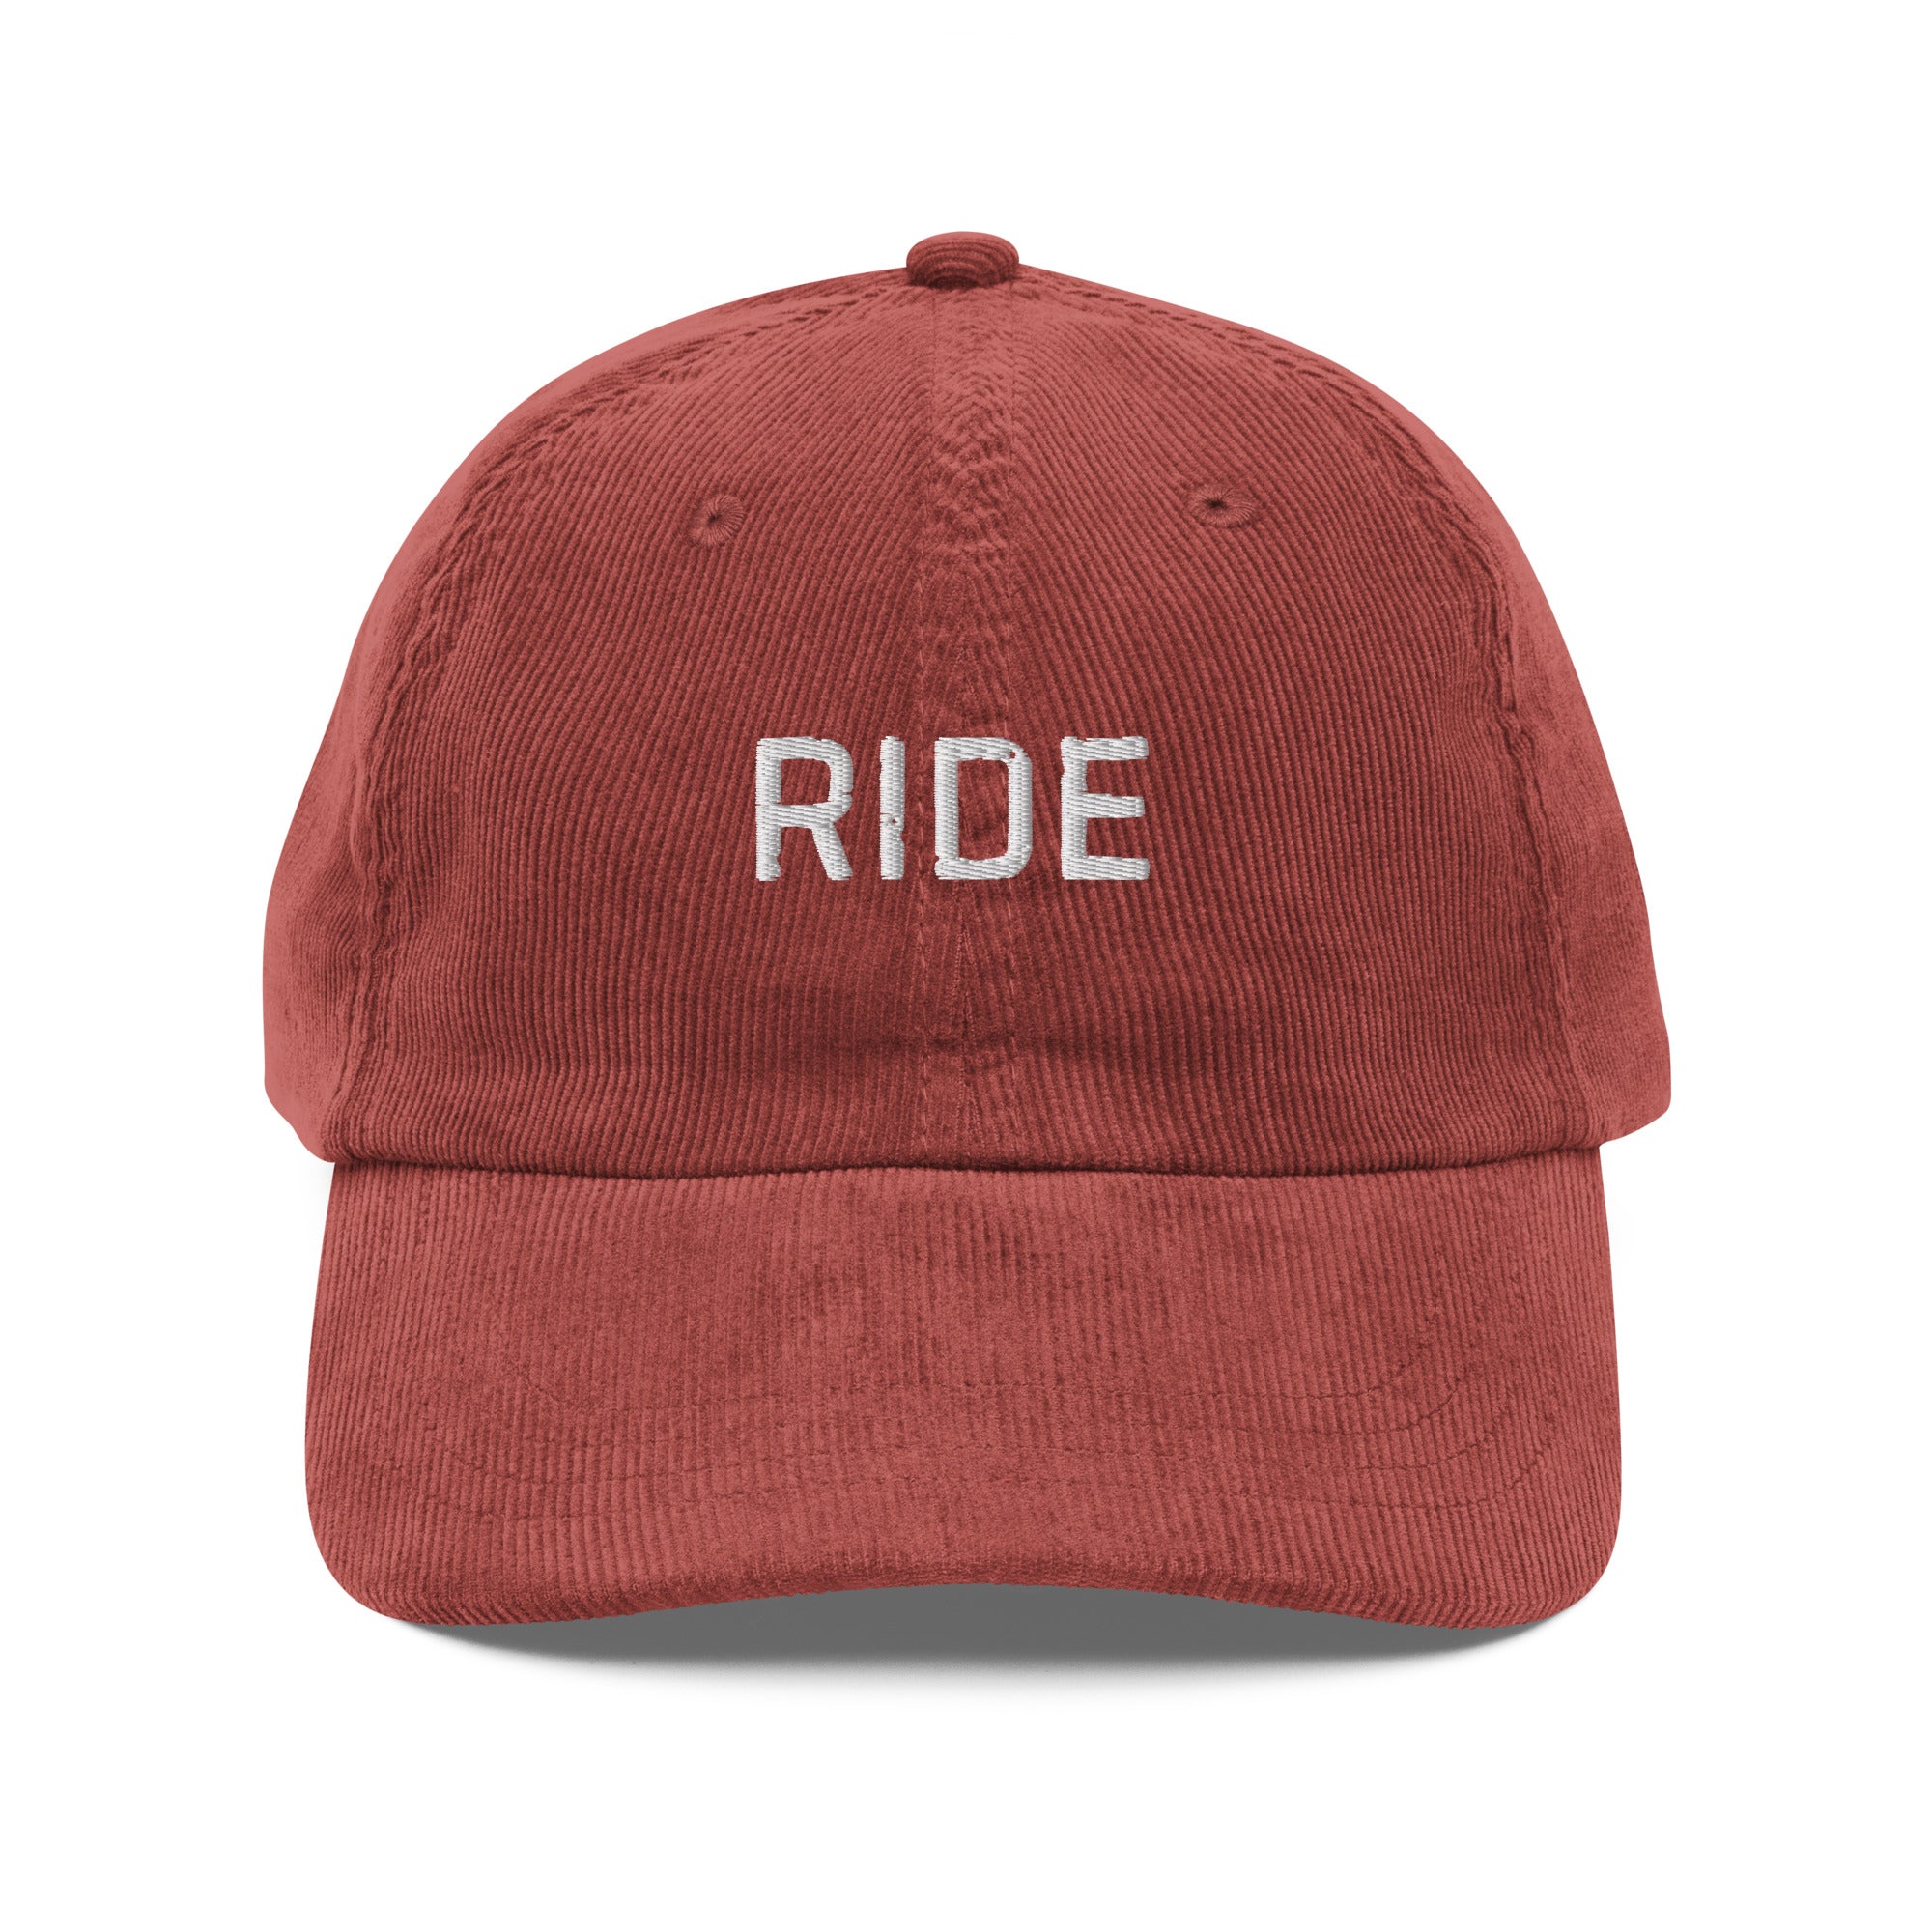 Ride Vintage corduroy cap